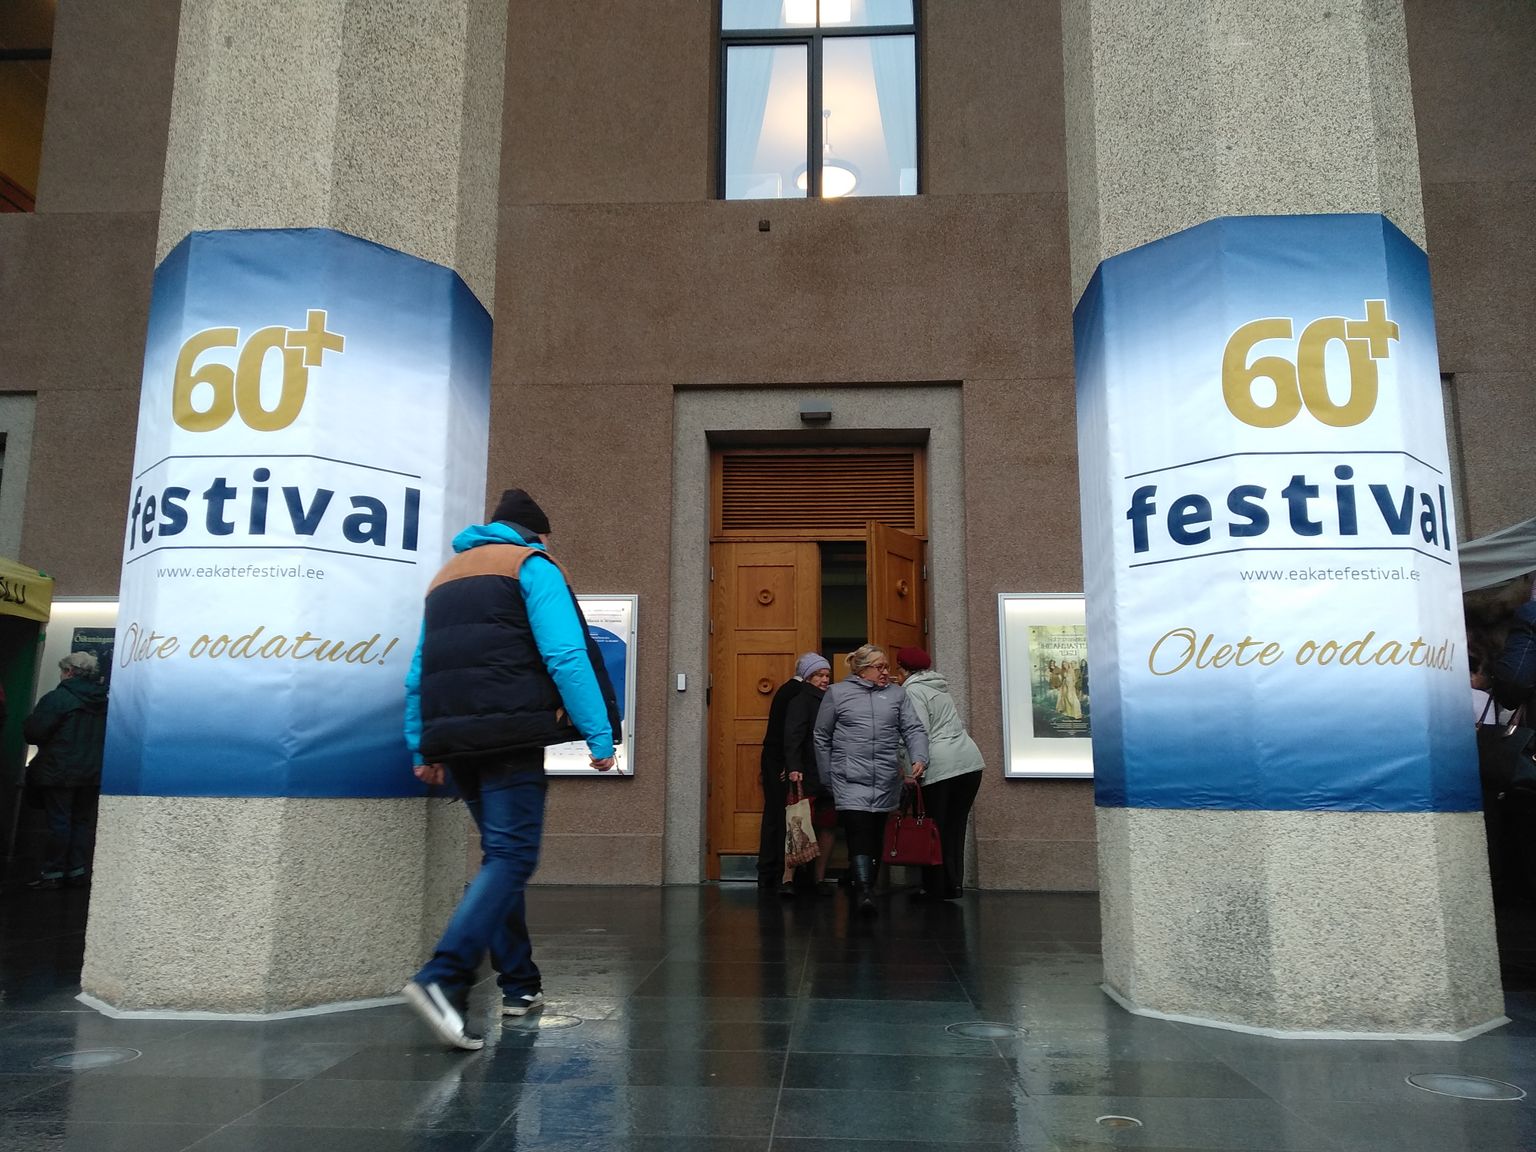 60+ festival Salme kultuurikeskuses.